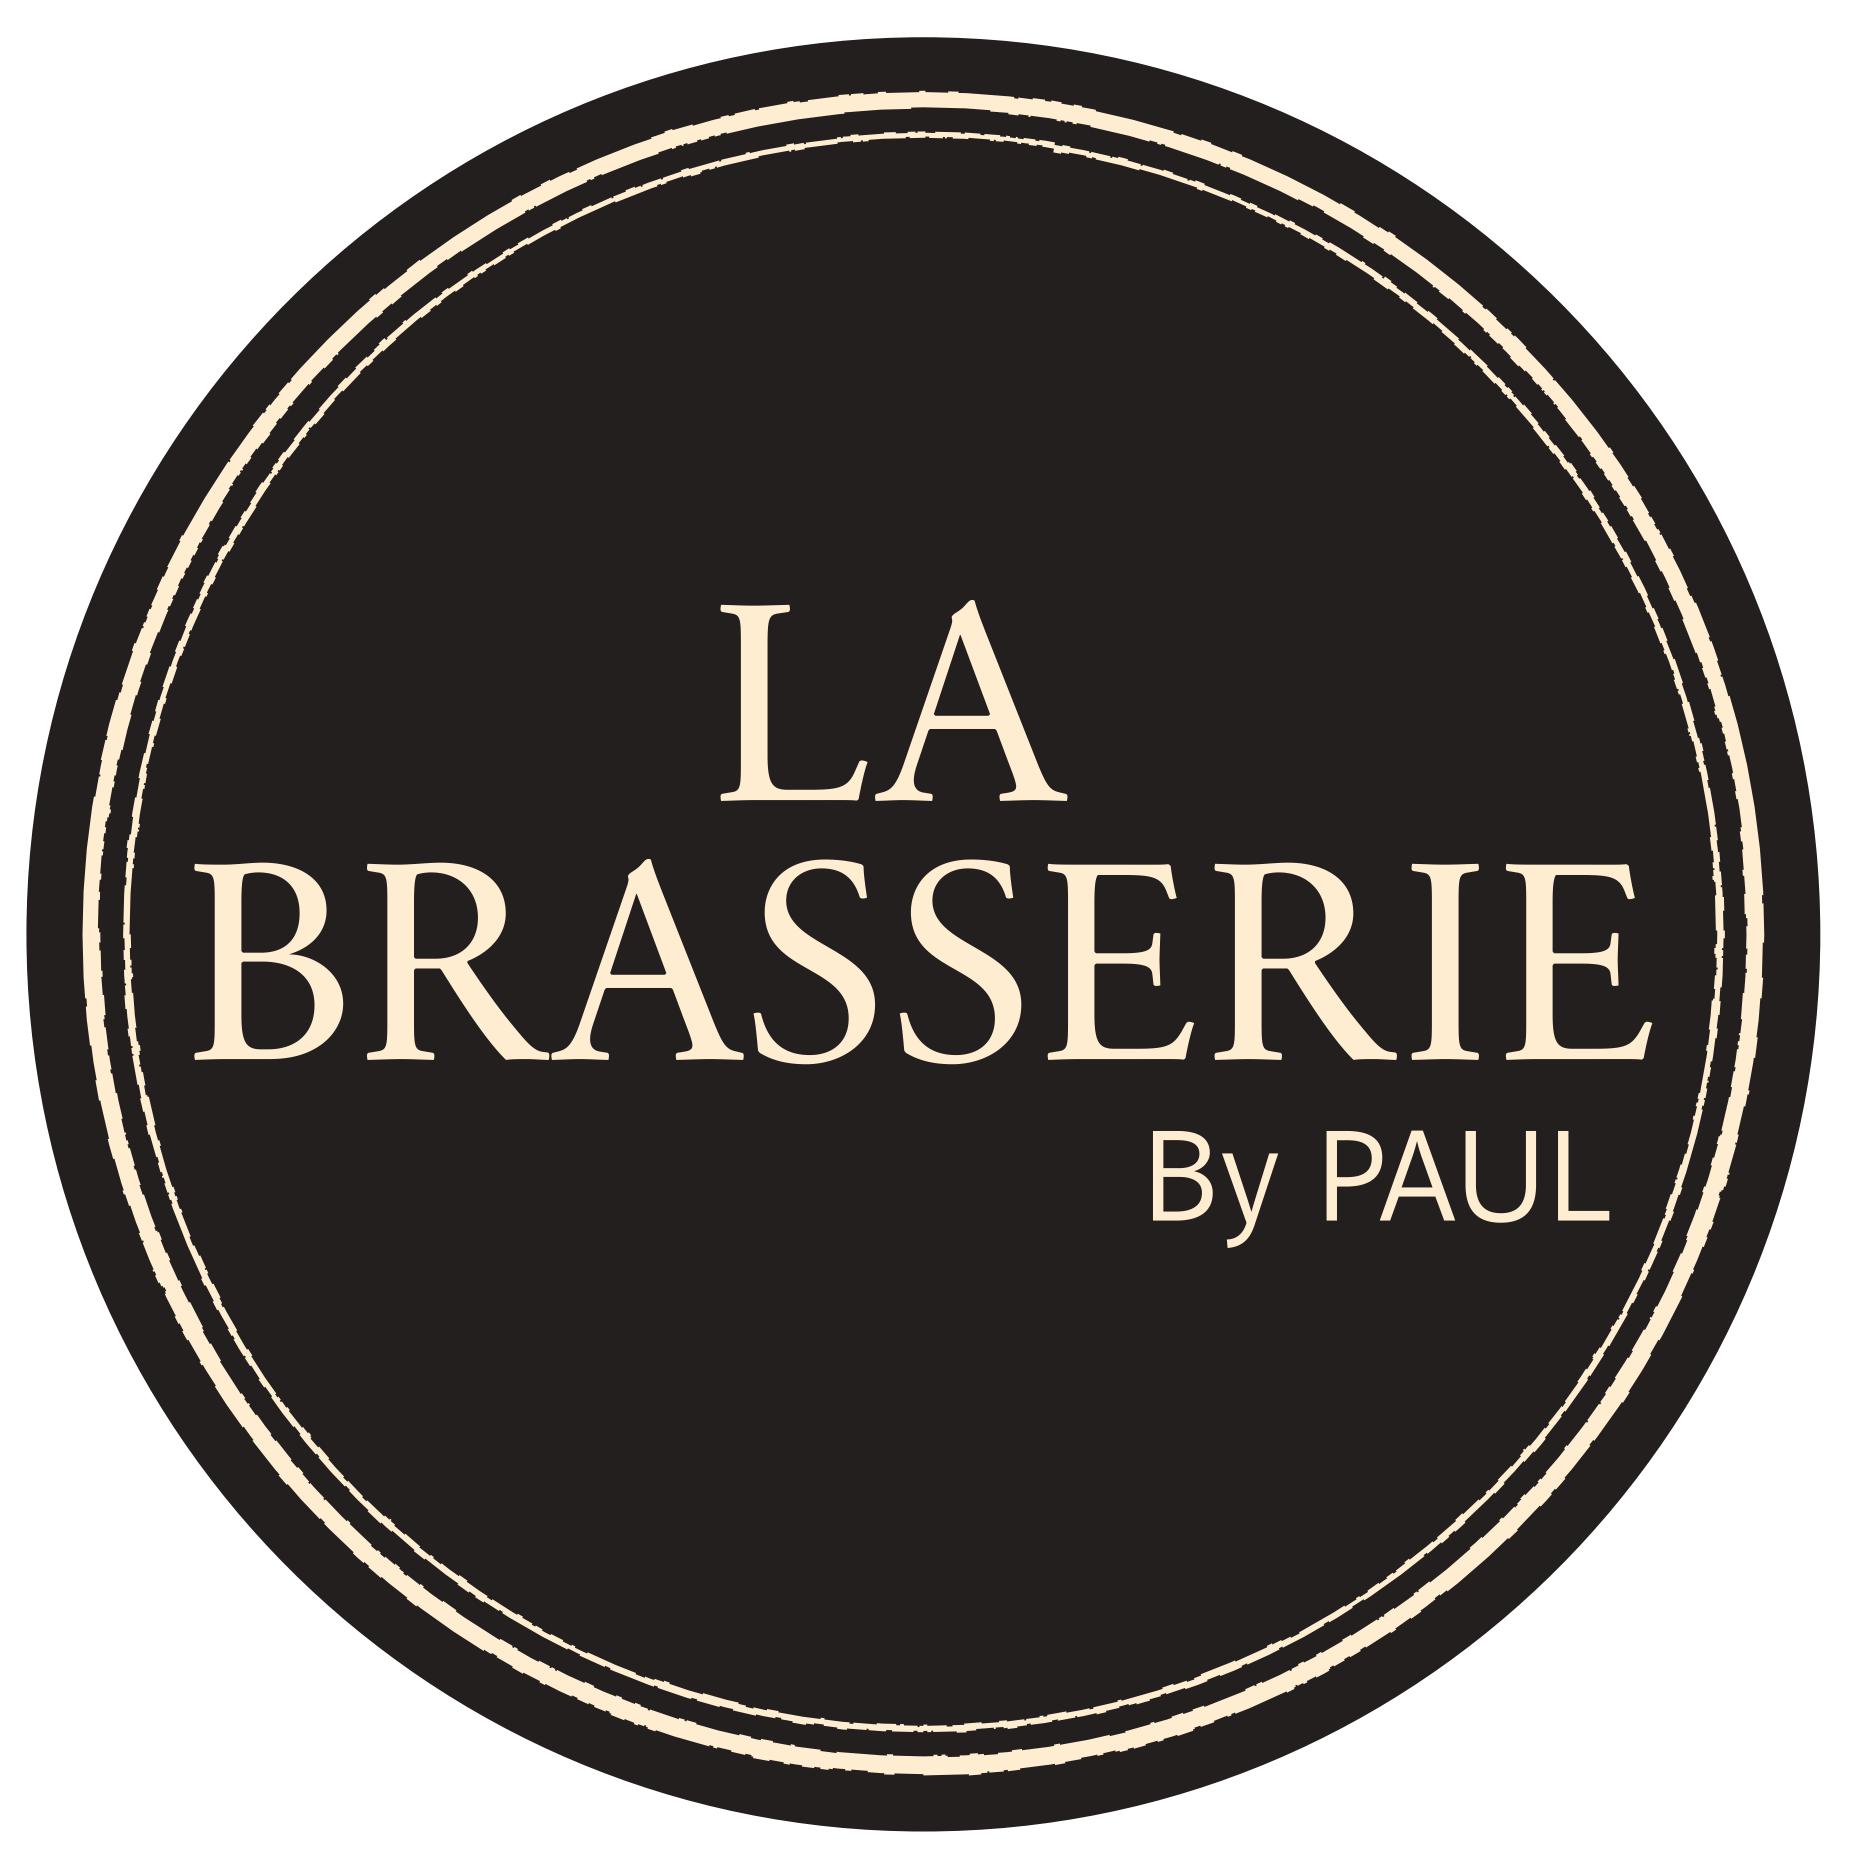 LA BRASSERIE BY PAUL